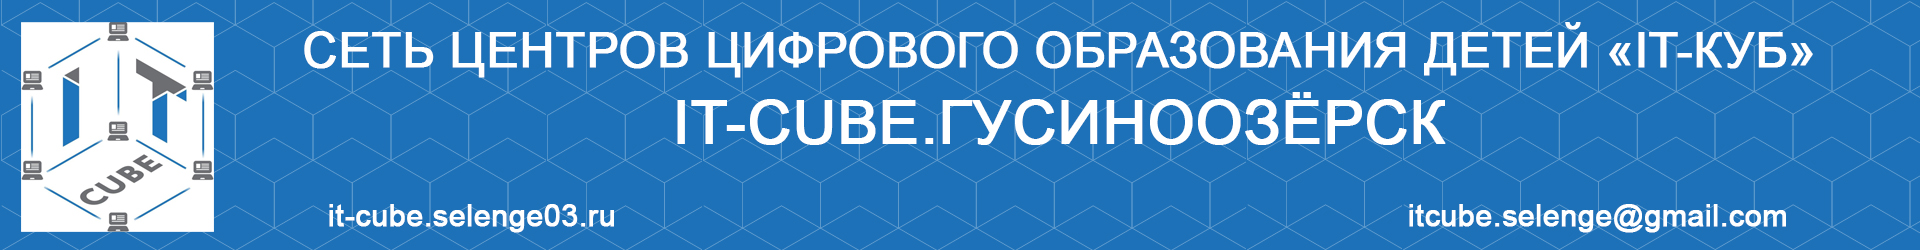 ЦЦОД «IT-cube.Гусиноозерск» является Региональной площадкой проведения Всероссийского технологического диктанта